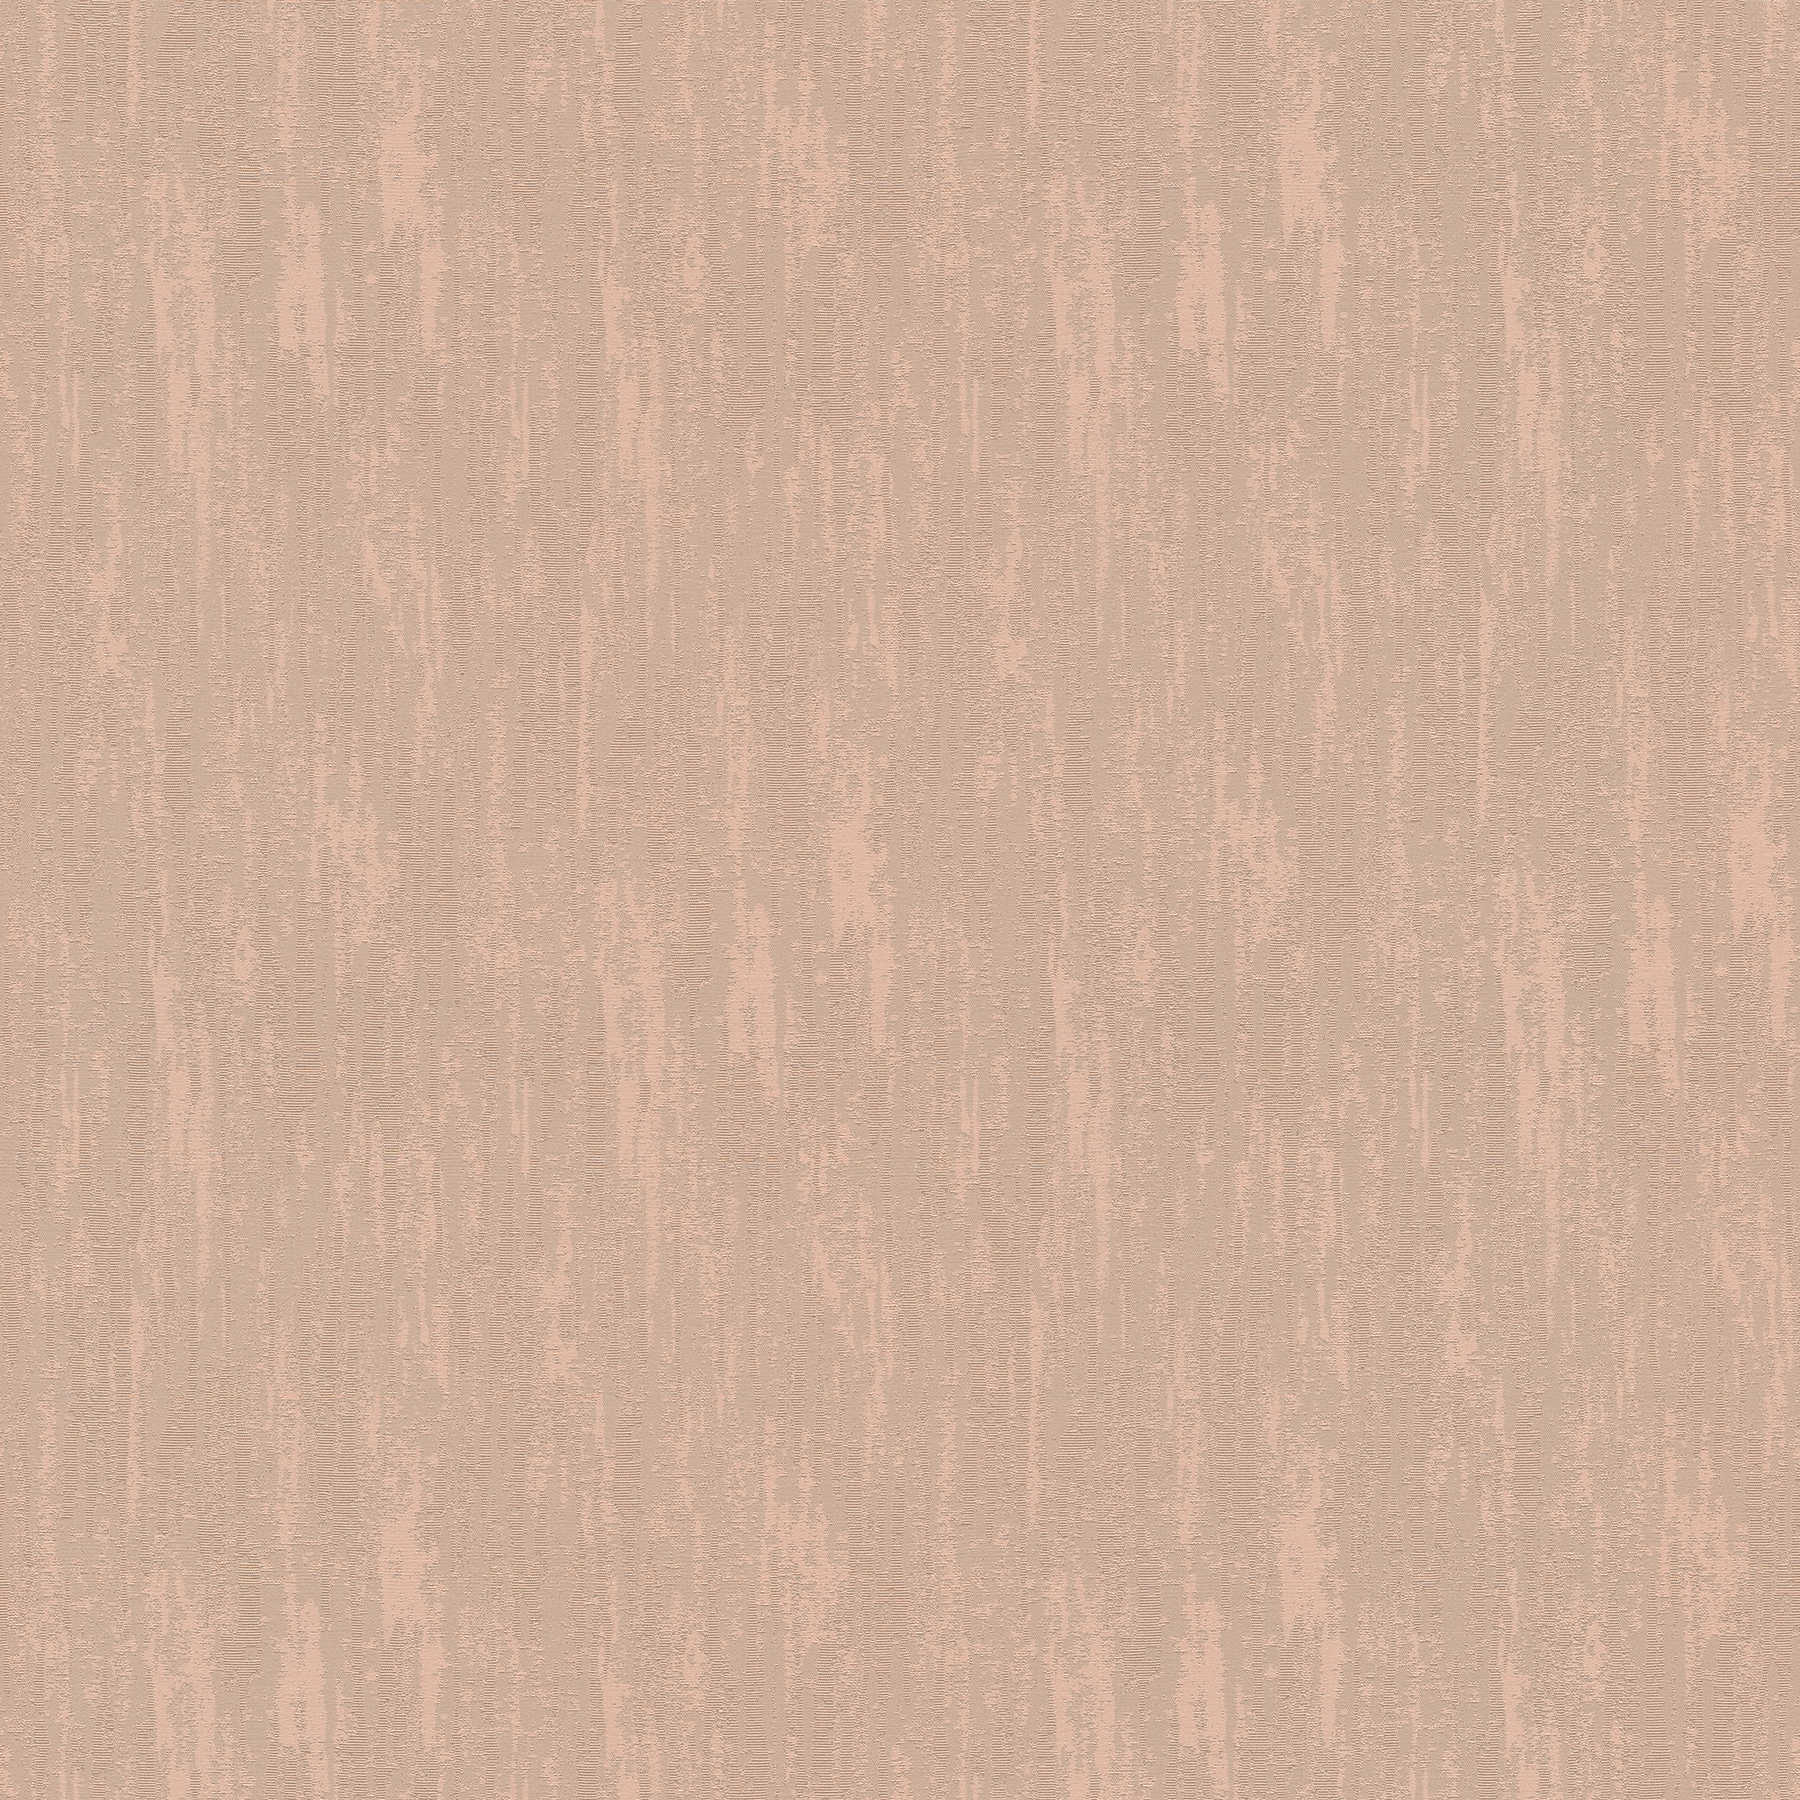         Hochwertige Vliestapete einfarbig mit Glitzereffekt – Braun
    